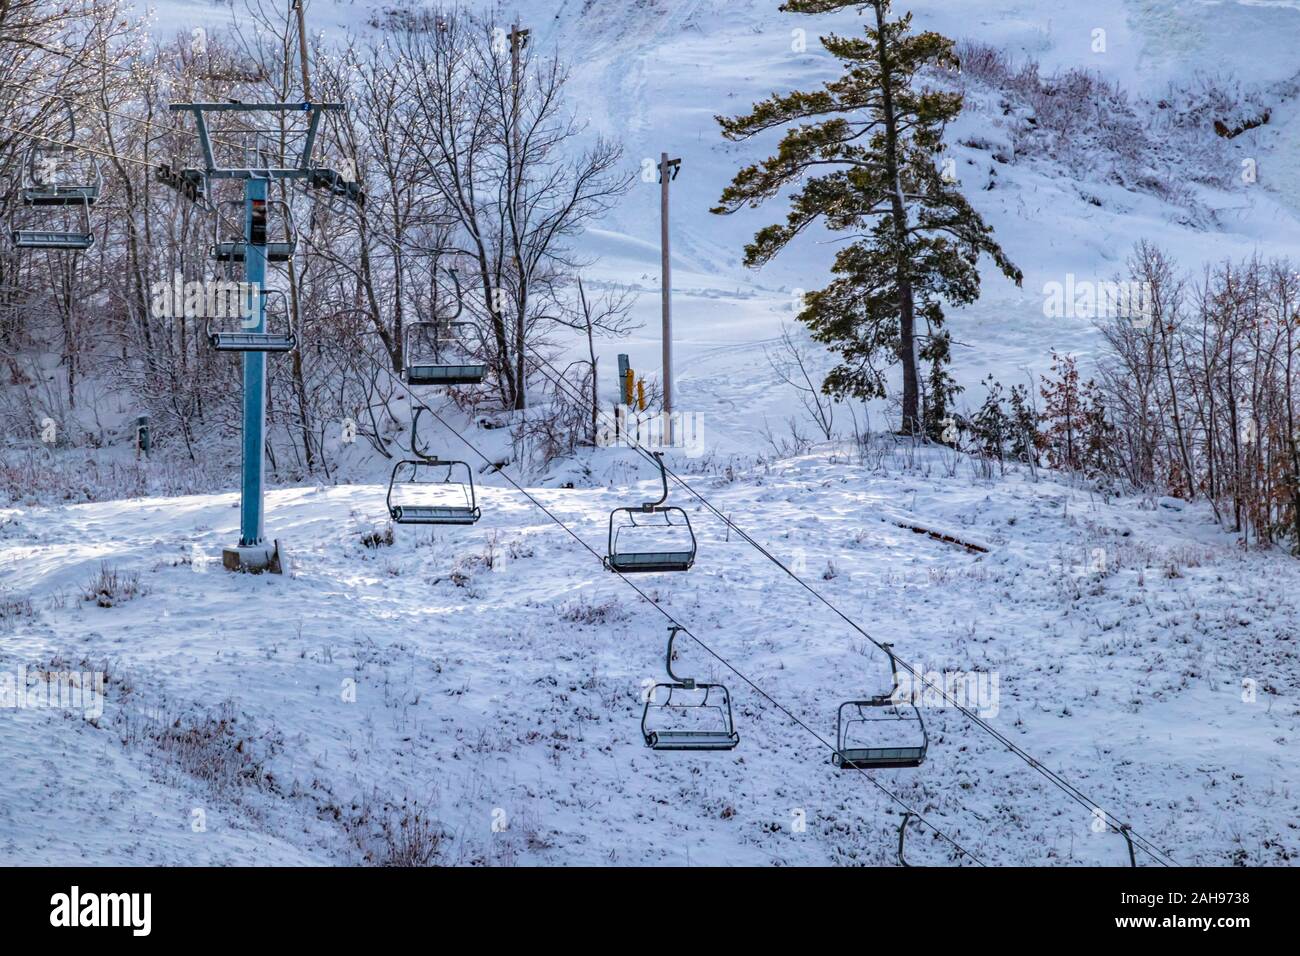 Una seggiovia è visibile sul lato di una collina di sci, le sue sedi vuote pensili e immobile come la collina è preparato per gli sciatori e gli snowboarder pronto all'uso. Foto Stock